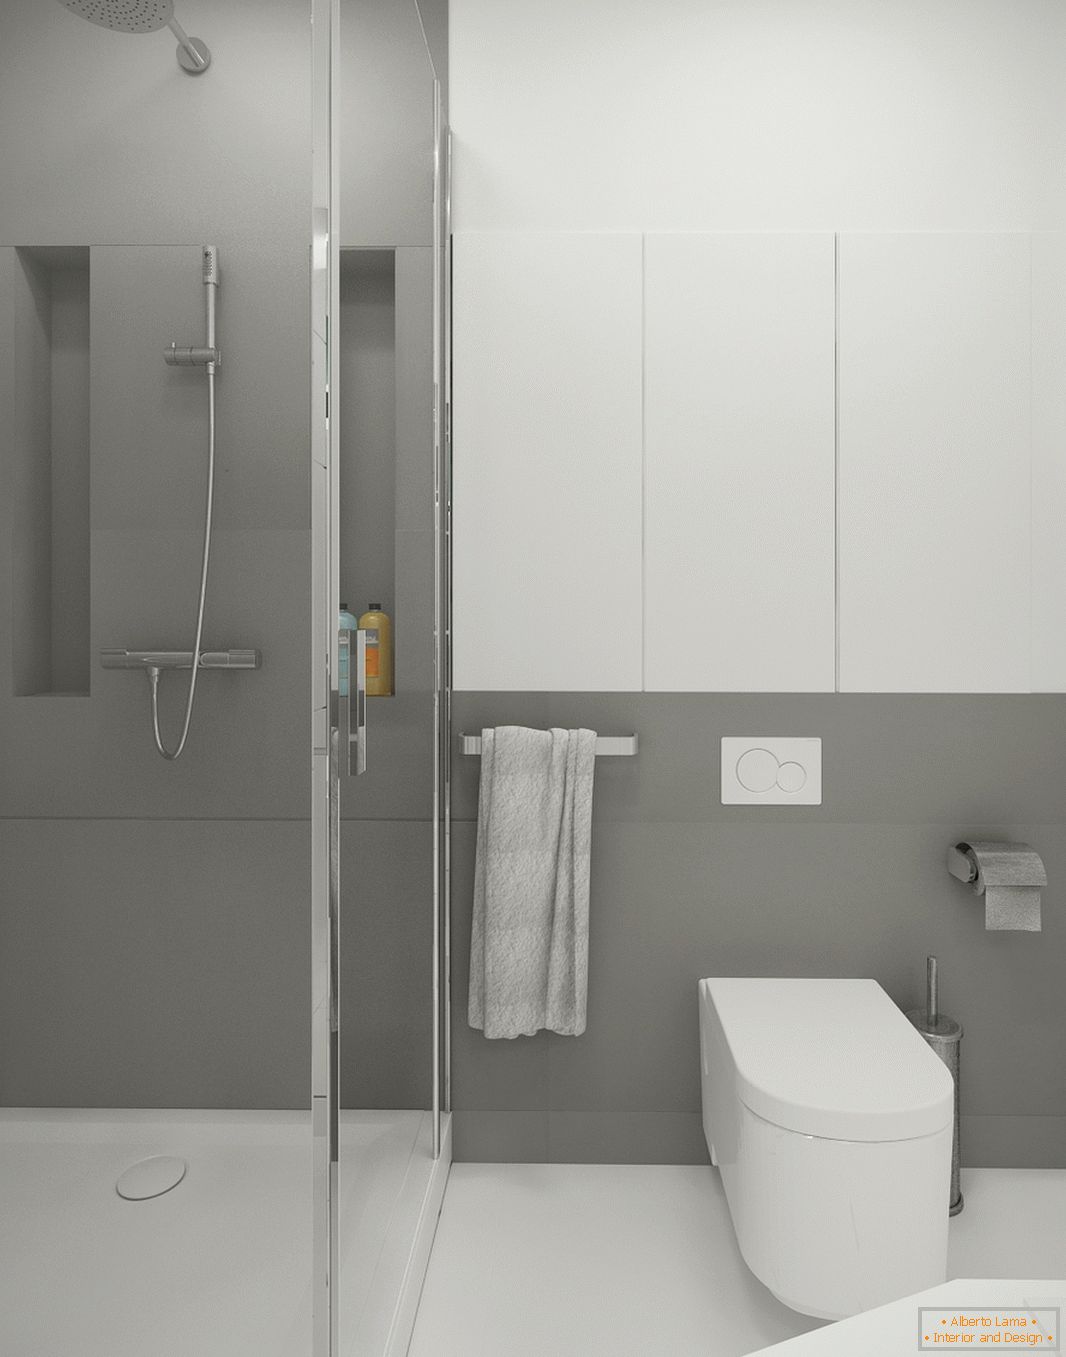 Badezimmer in weiß-grauer Farbe